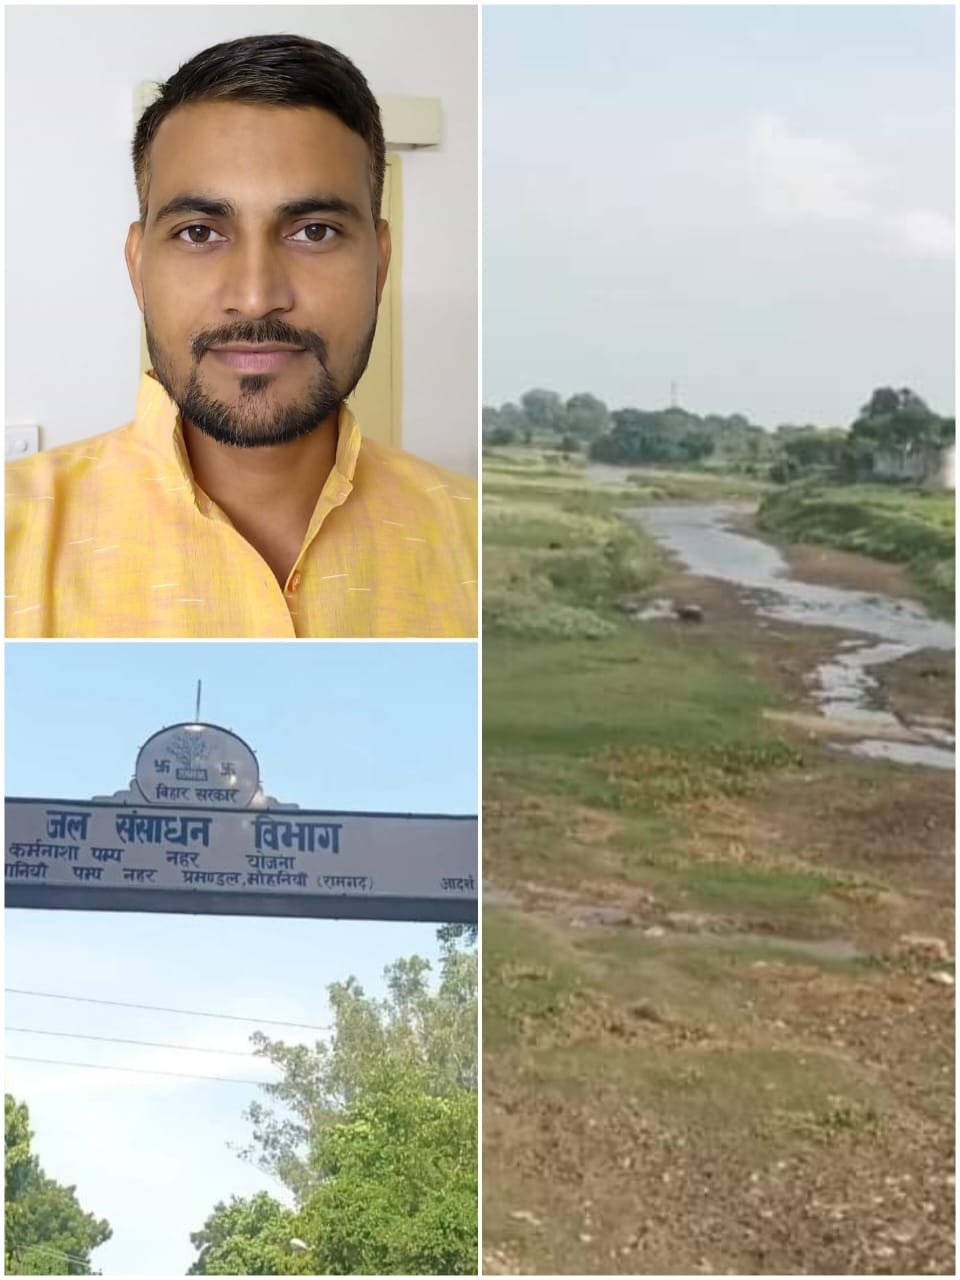 हिंदी समाचार |कर्मनाशा नदी के संरक्षण,...